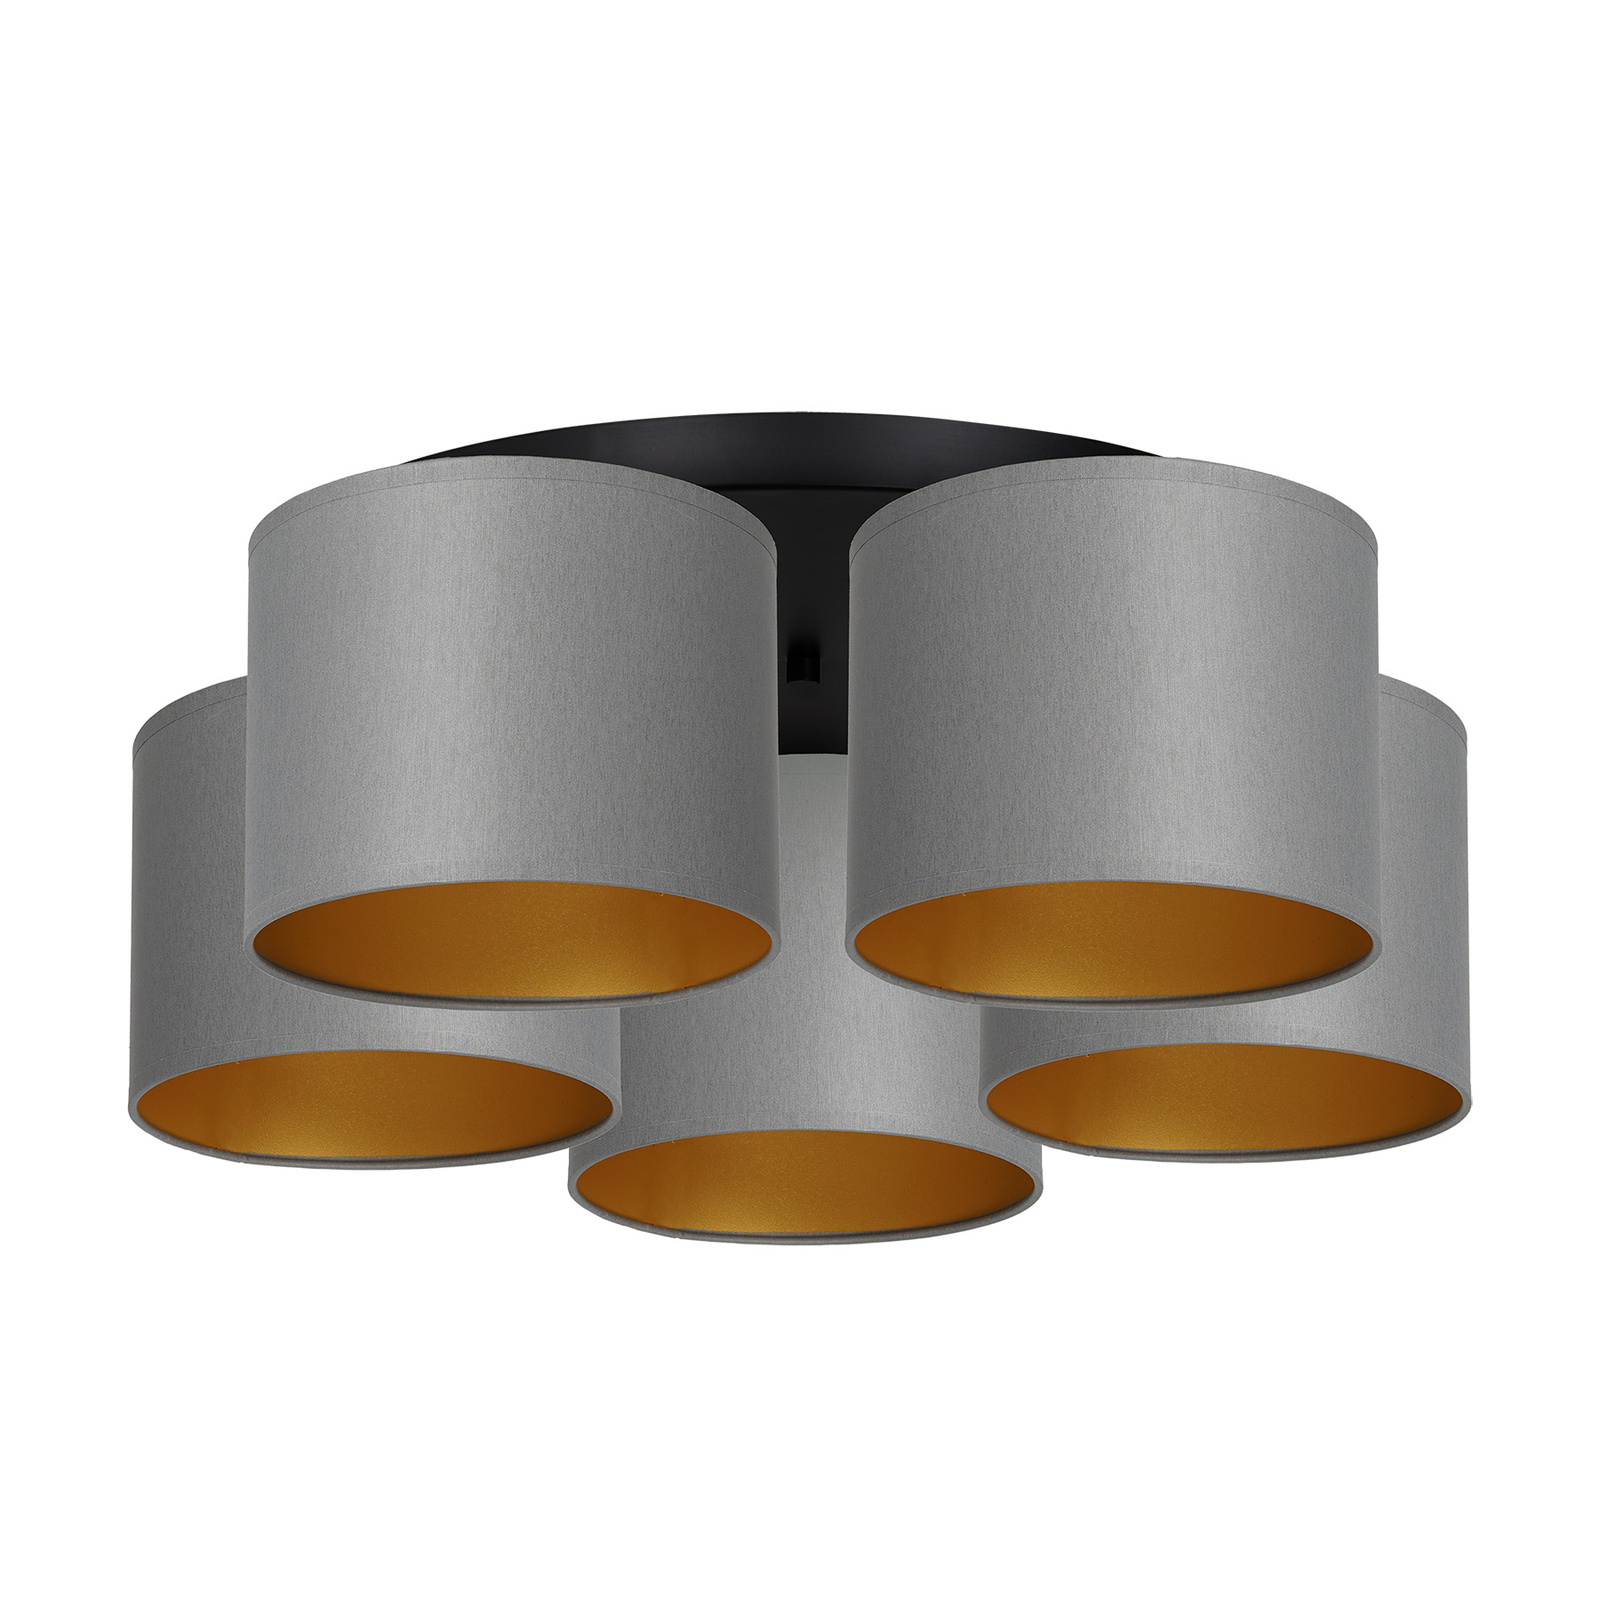 Taklampa Soho cylindrisk 5 lampor grå/guld